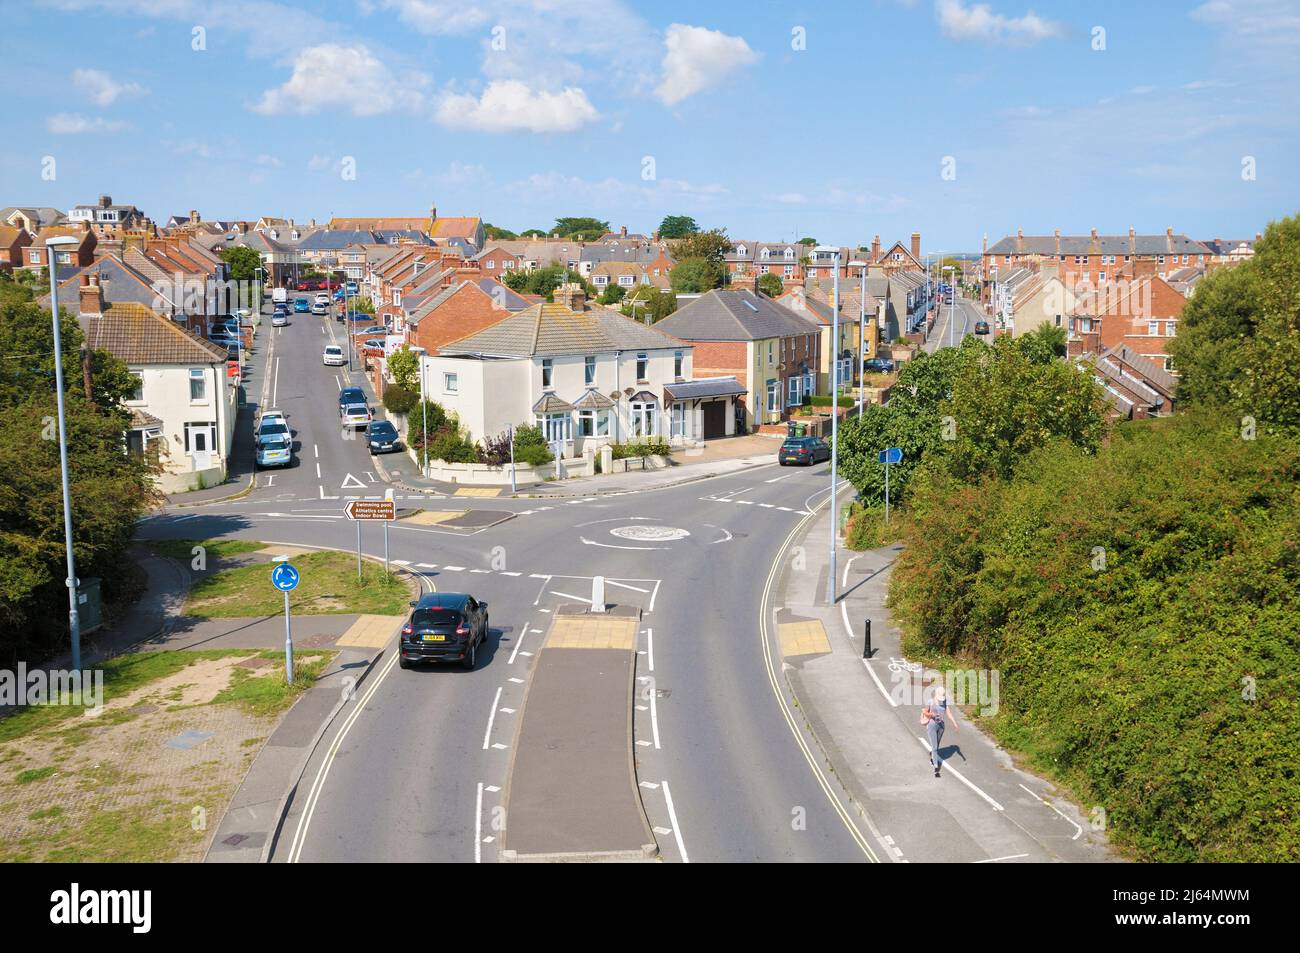 Vue imprenable sur les rues résidentielles et les maisons mitoyennes avec mini-rond-point et jonction de route à la périphérie de Weymouth, Dorset, Angleterre, Royaume-Uni Banque D'Images